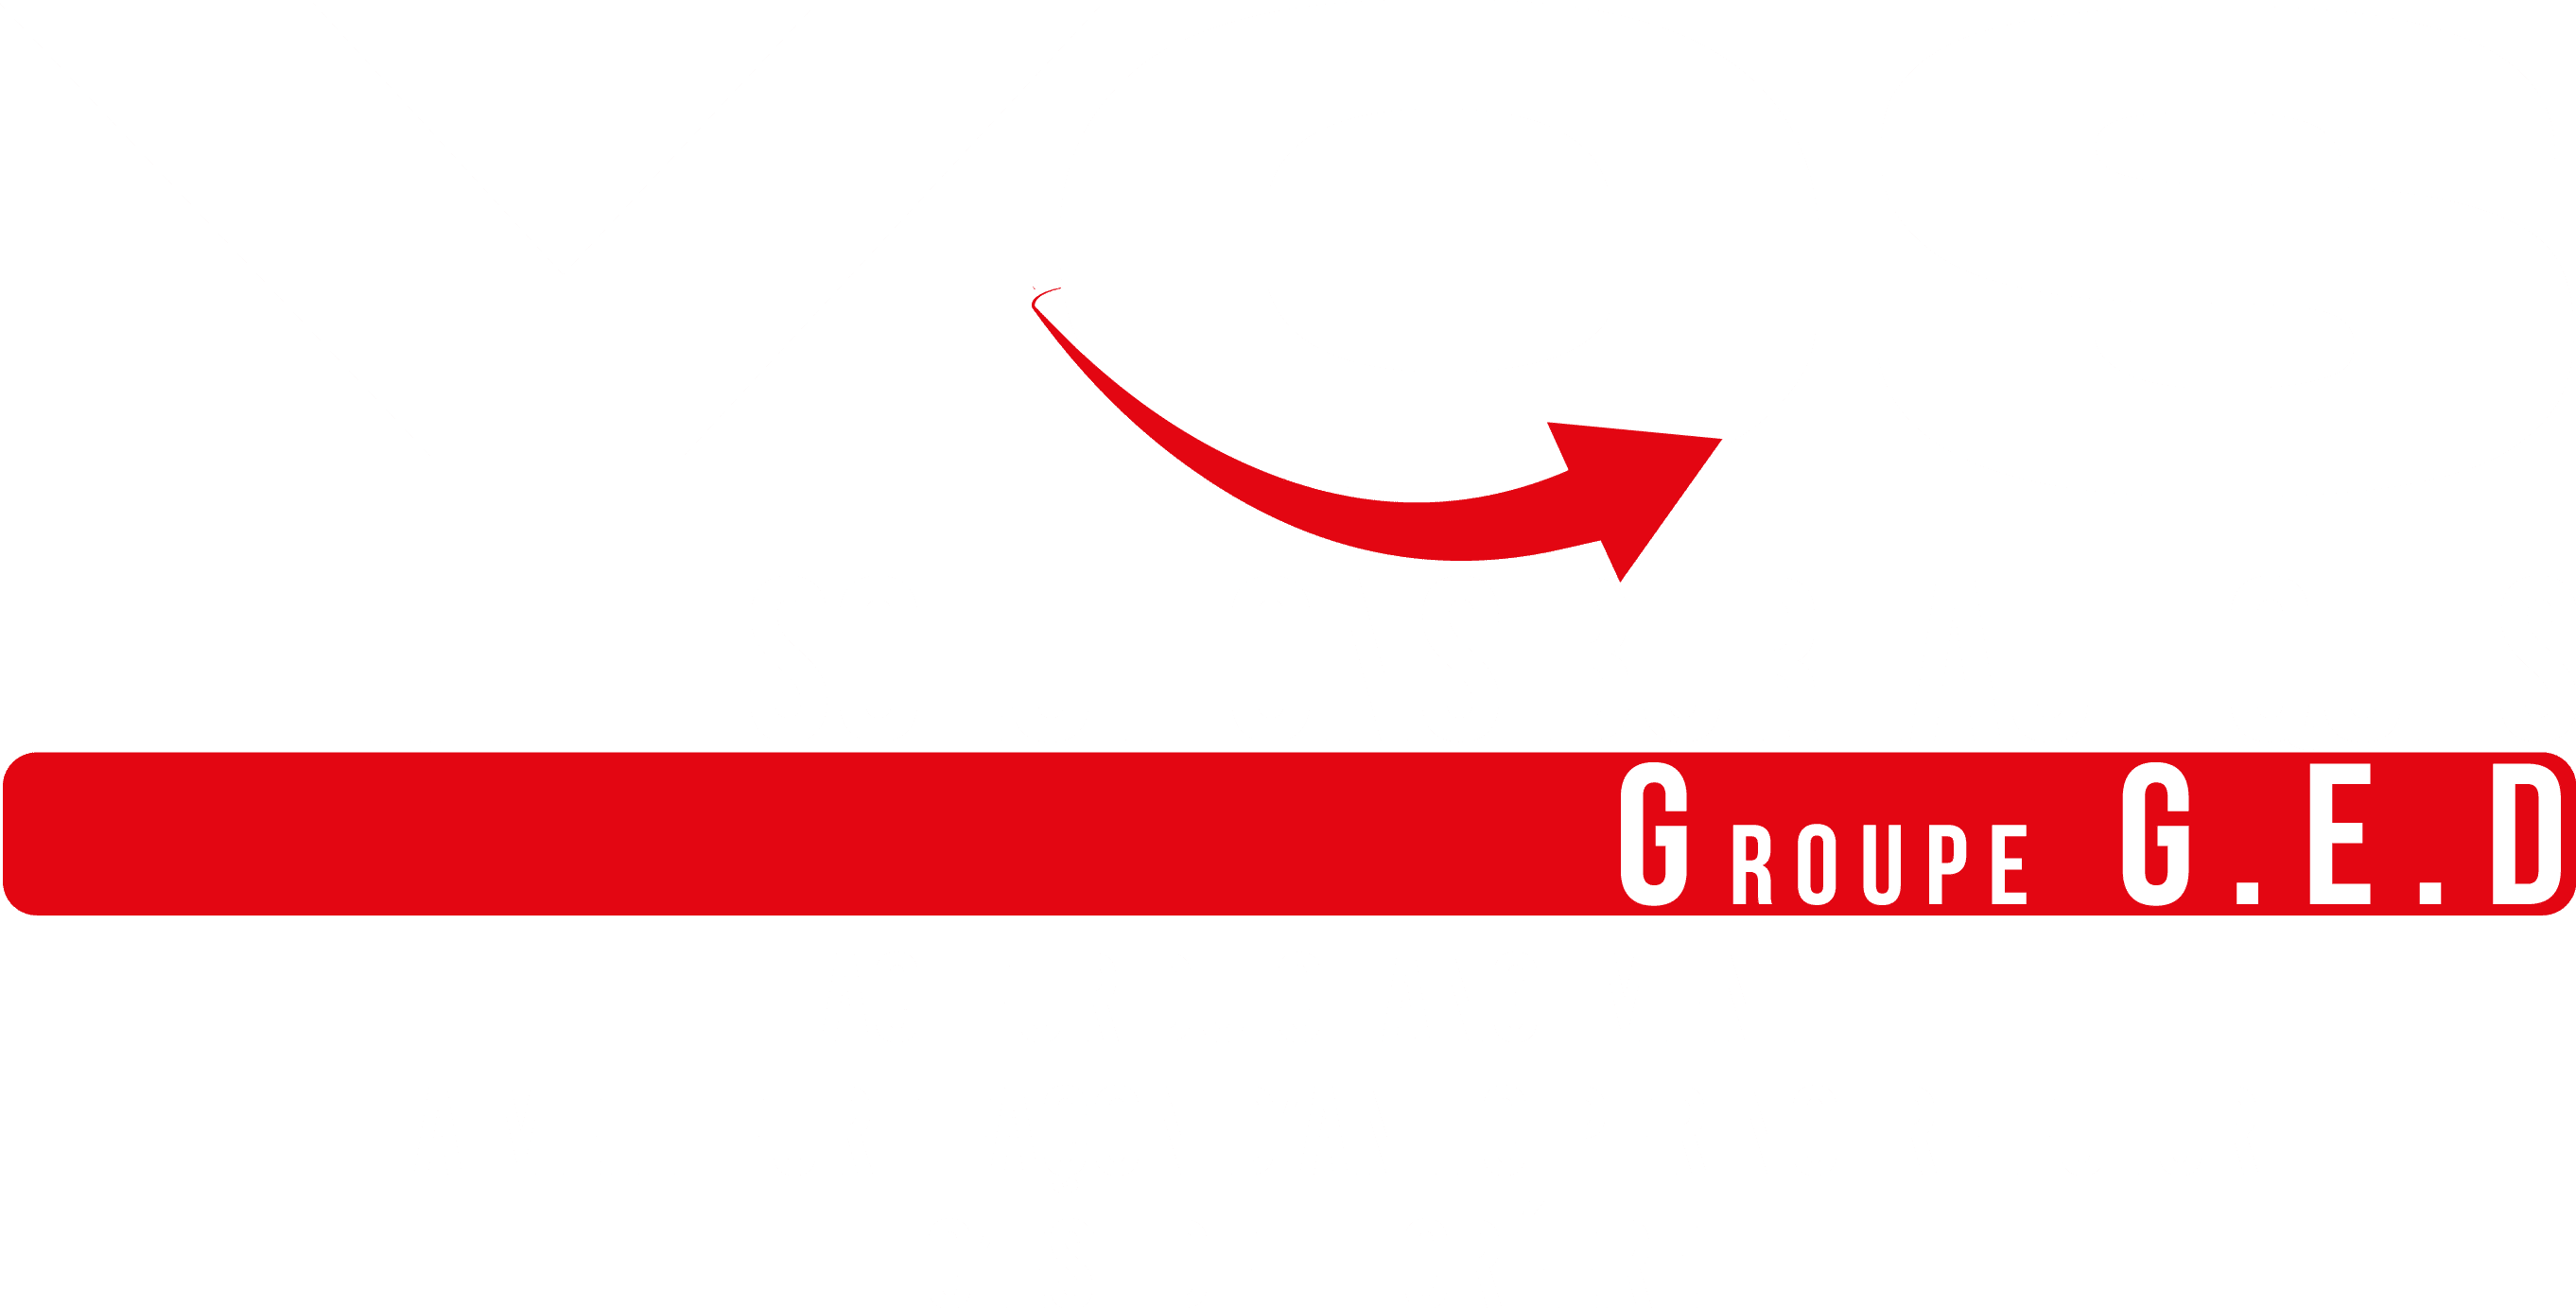 Yes Solutions Bureautiques